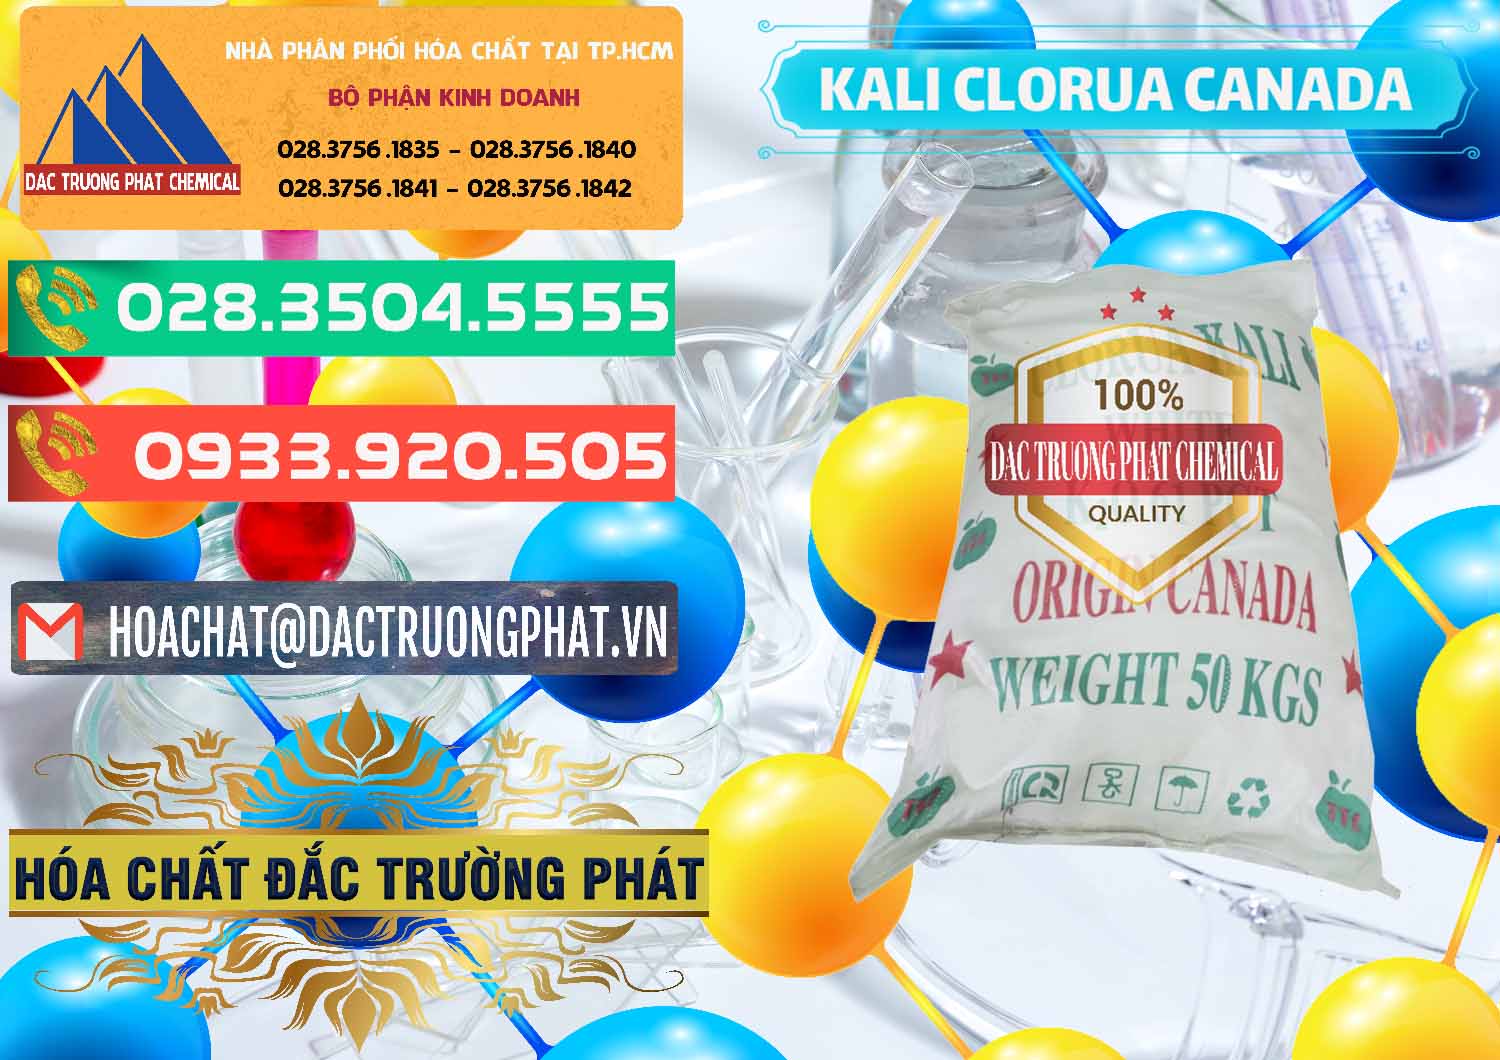 Đơn vị chuyên cung ứng - bán KCL – Kali Clorua Trắng Canada - 0437 - Công ty chuyên cung cấp ( bán ) hóa chất tại TP.HCM - congtyhoachat.com.vn